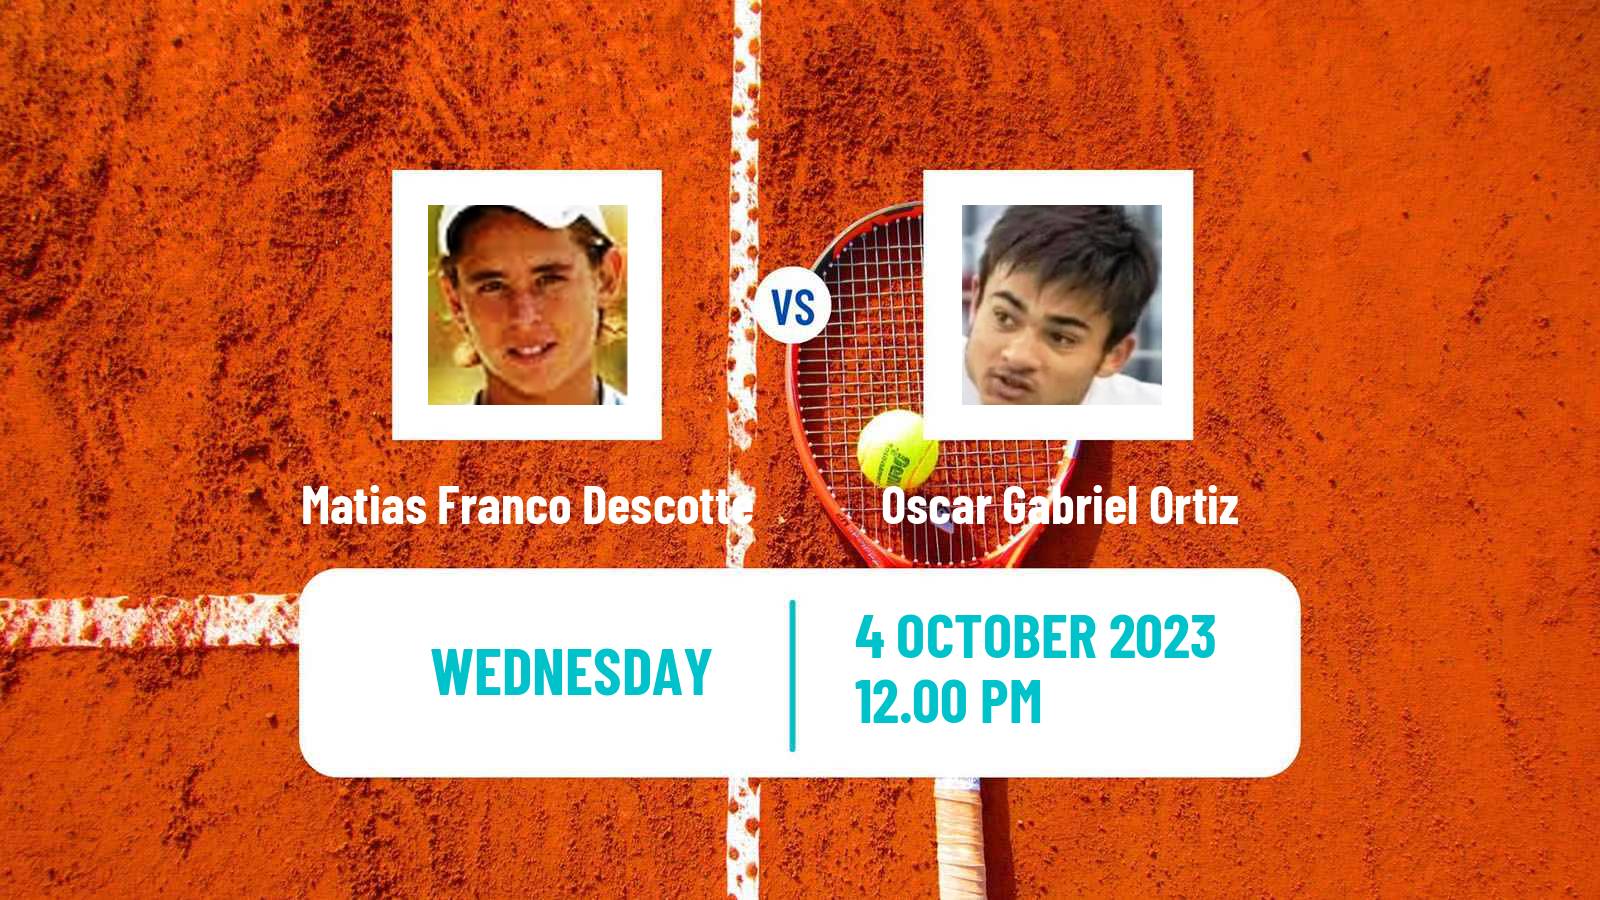 Tennis ITF M25 Mendoza Men Matias Franco Descotte - Oscar Gabriel Ortiz